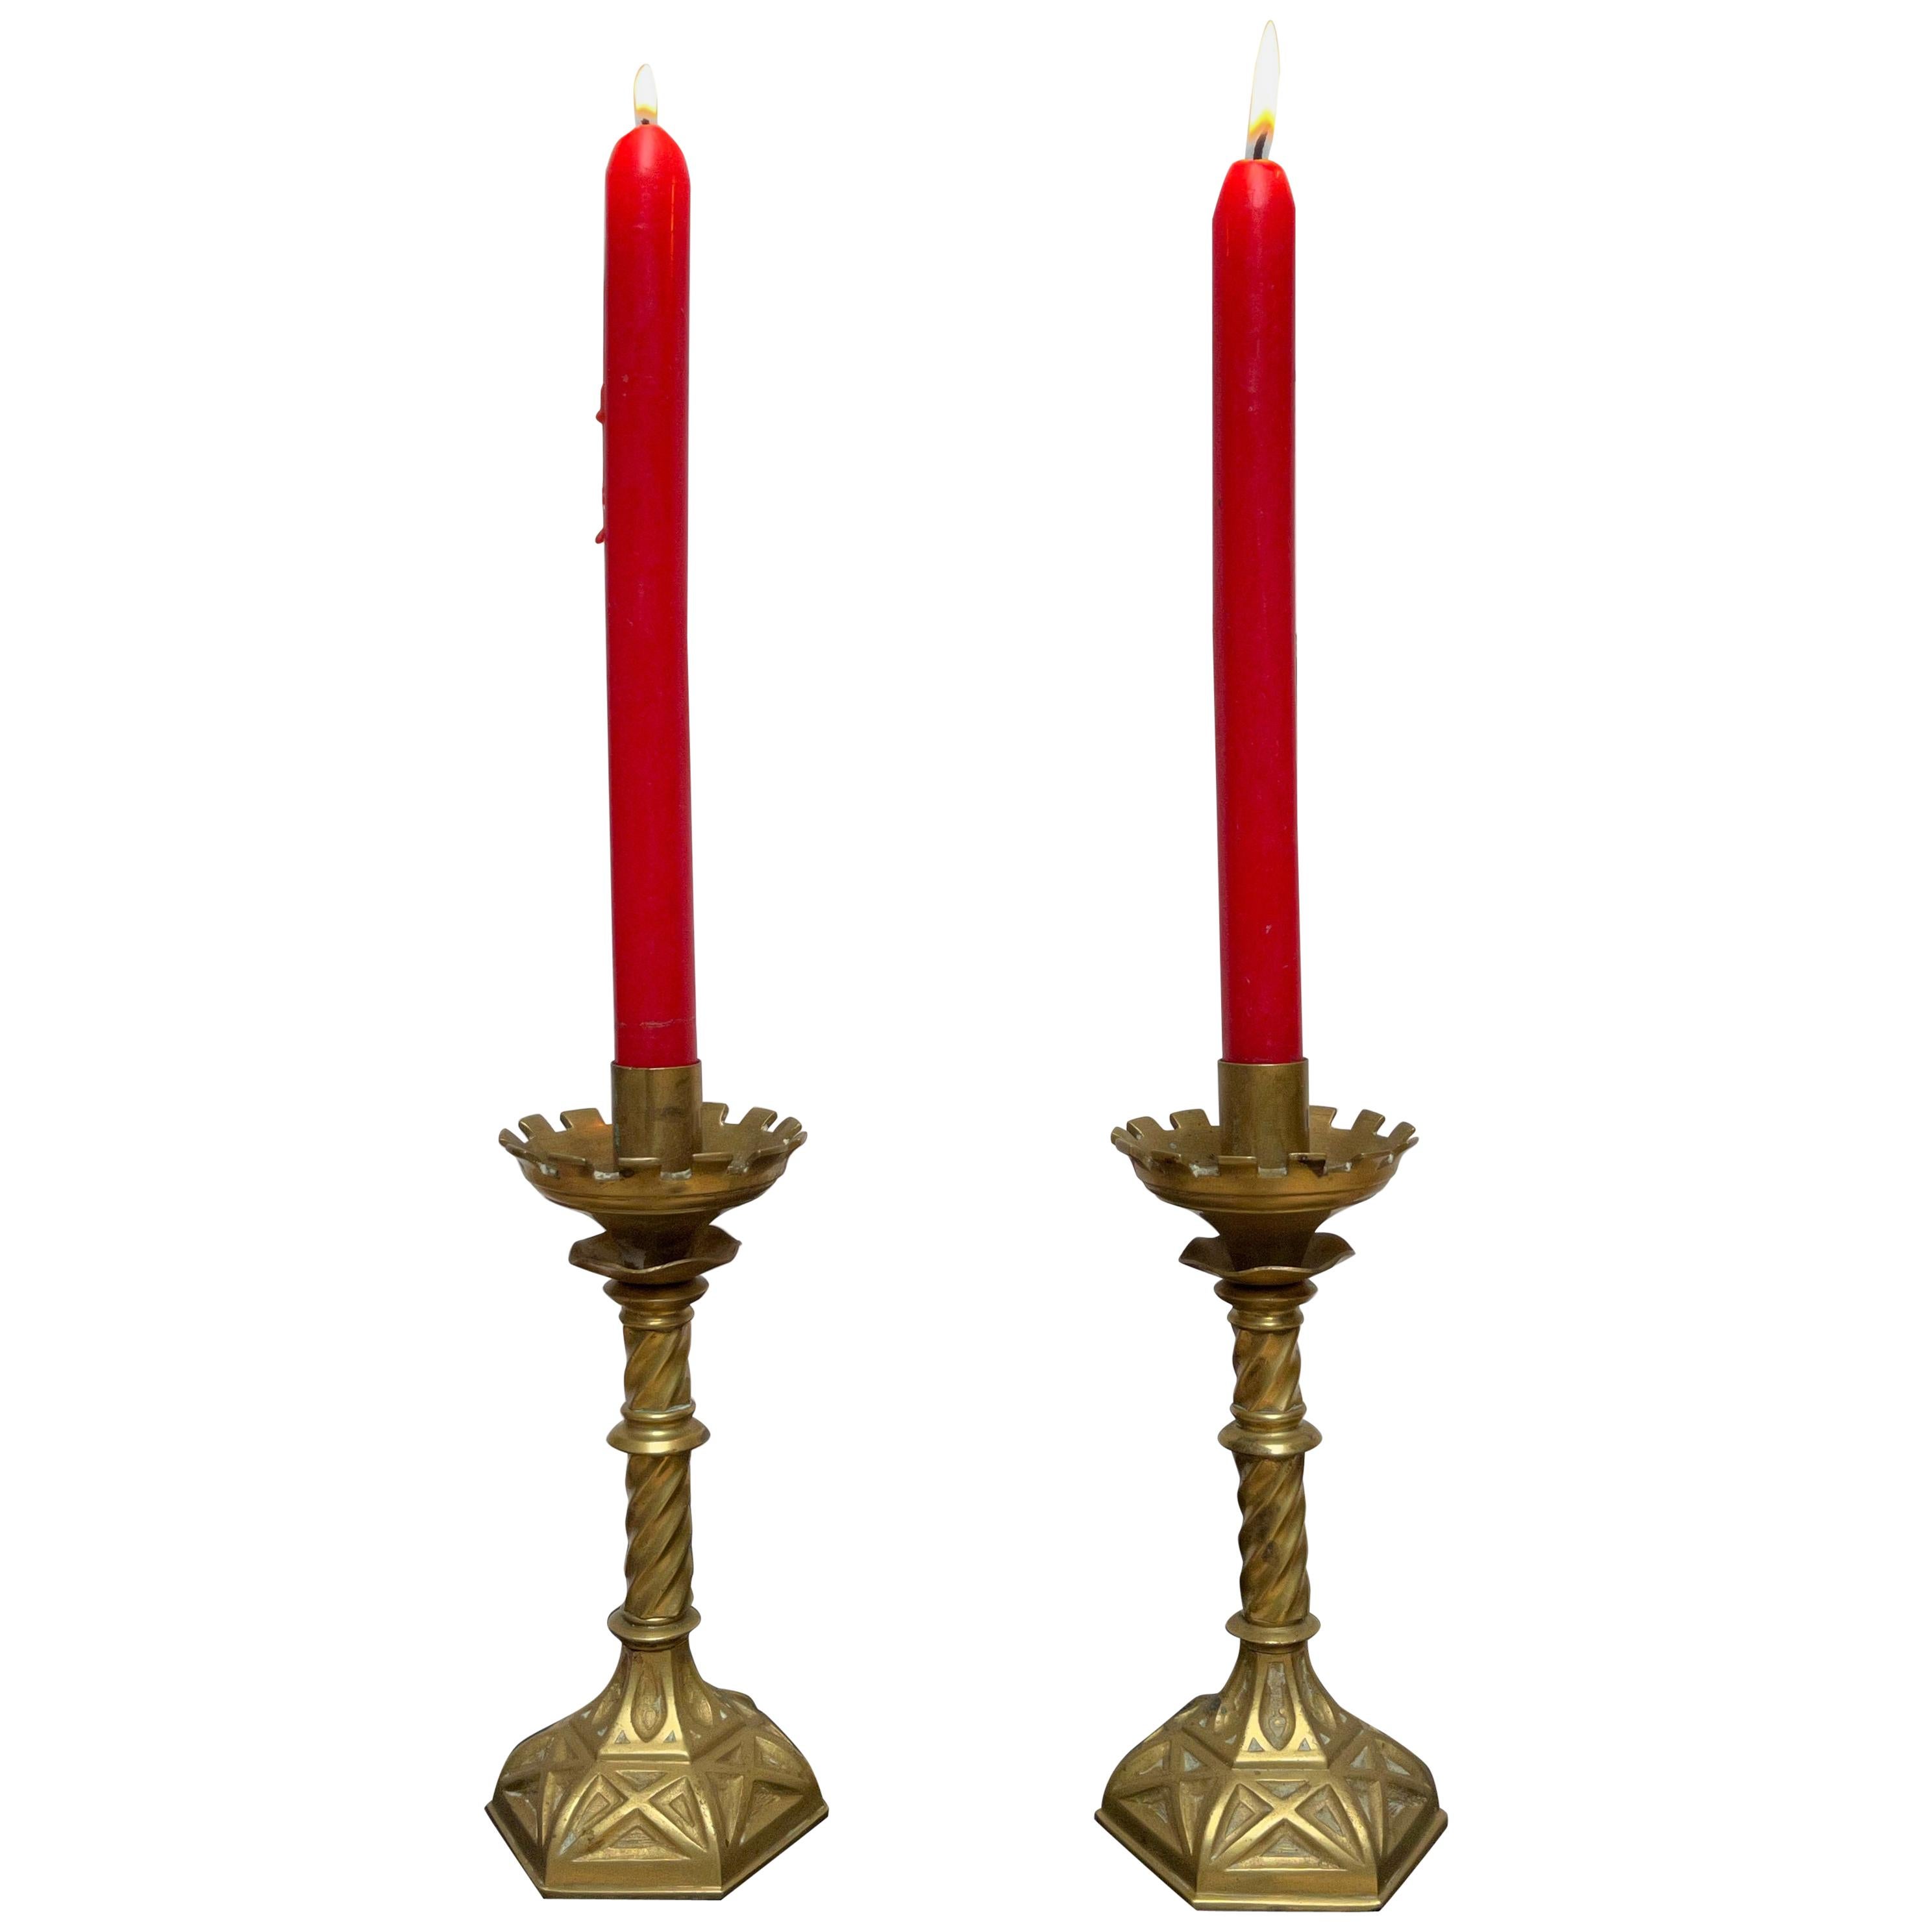 Ein Paar Kerzenhalter aus dem 19. Jahrhundert.

Wenn Sie auf der Suche nach einem stilvollen und kleinen Paar Kirchenkerzenhalter sind, um eine besondere Atmosphäre zu schaffen, könnte dieses handgefertigte Paar perfekt für Sie sein. Die 